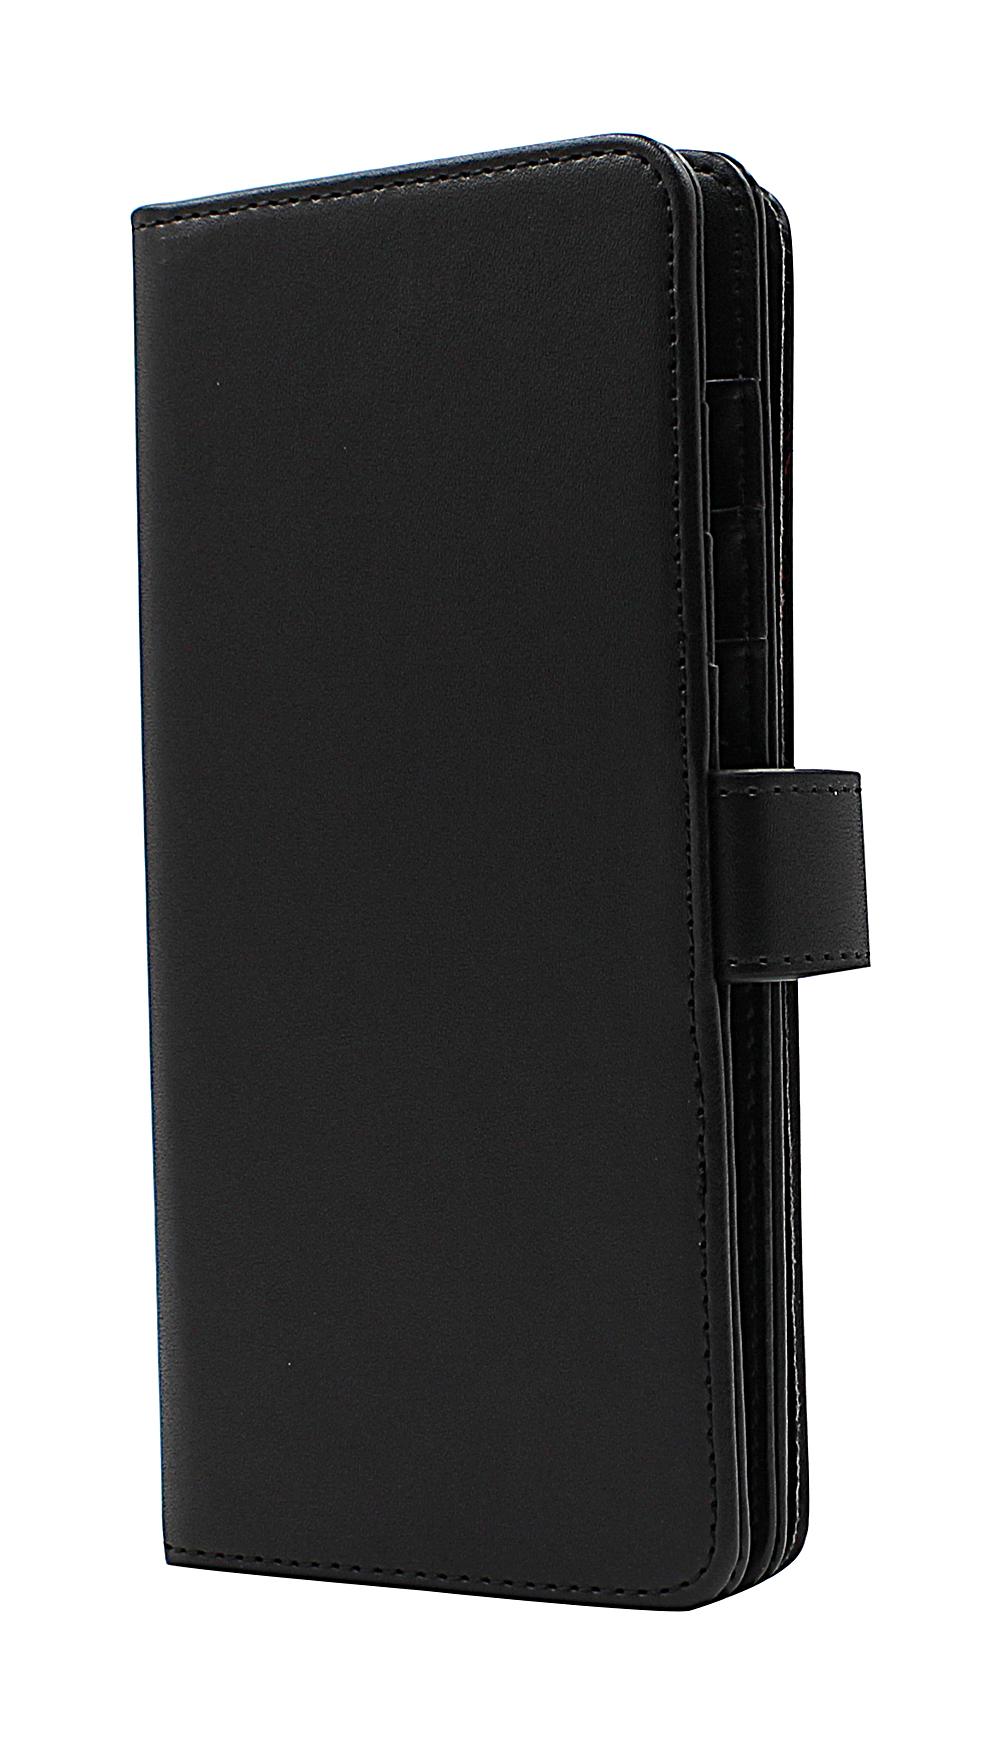 CoverInSkimblocker XL Wallet OnePlus 8 Pro